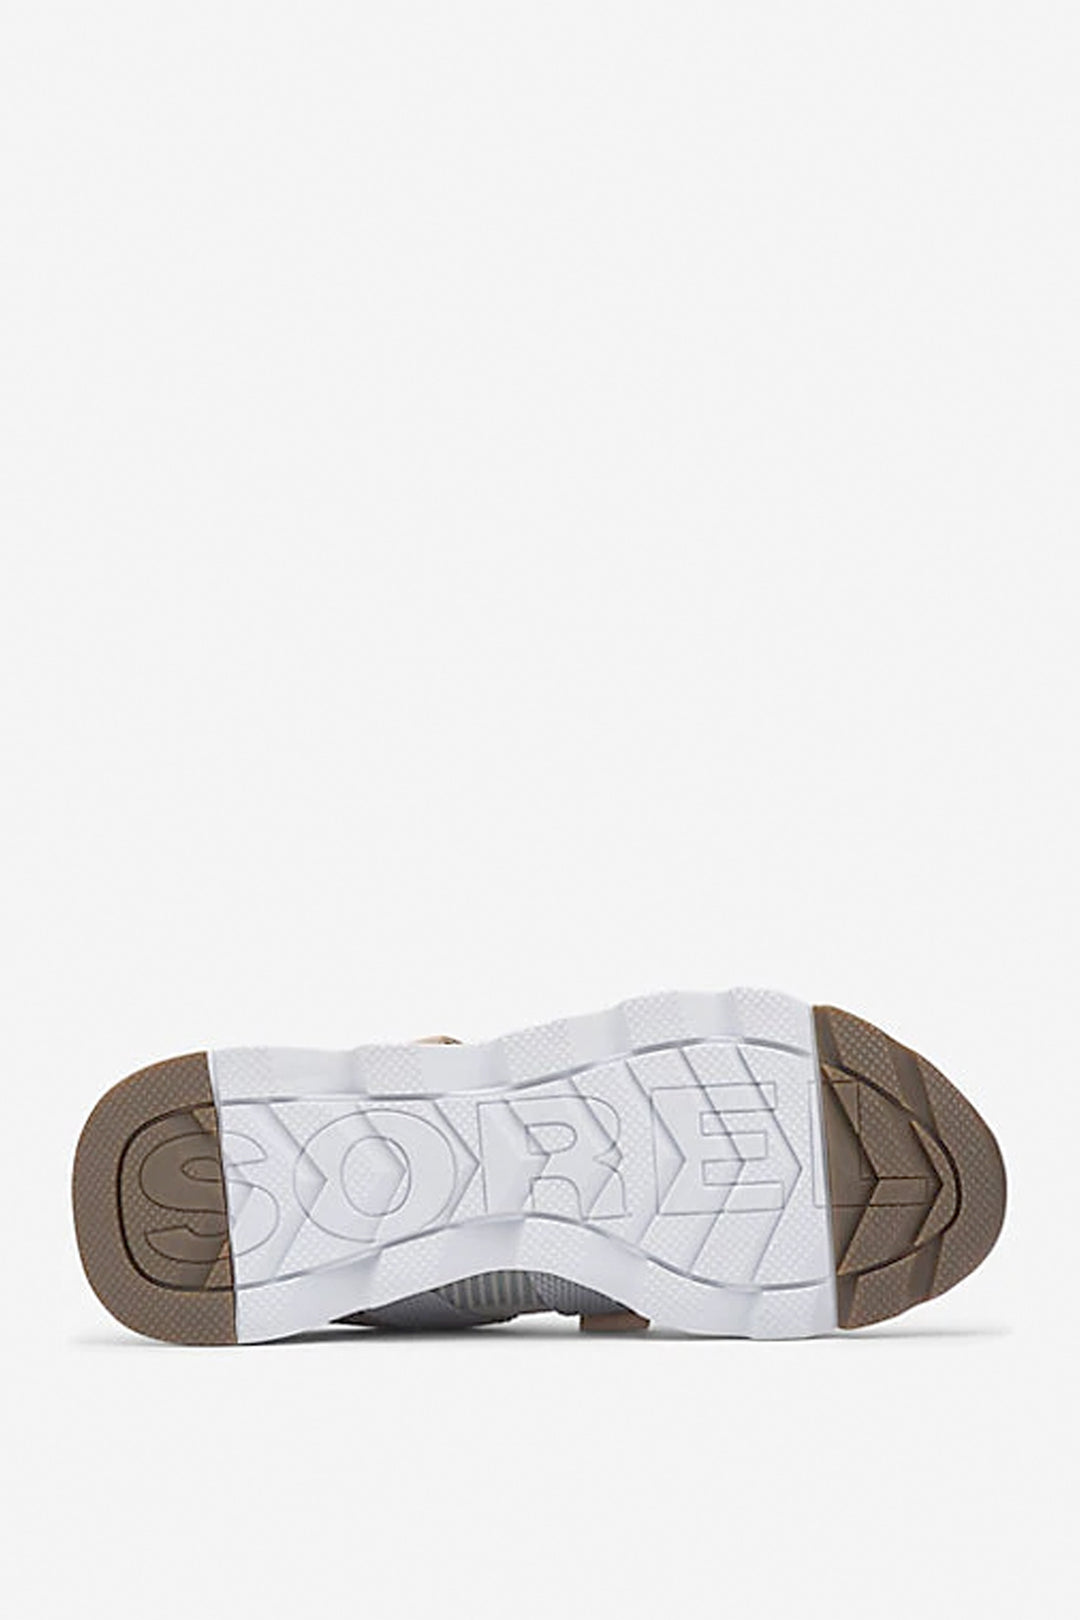 Sorel - Kinetic Lite Strap Perf Sneakers in Dove